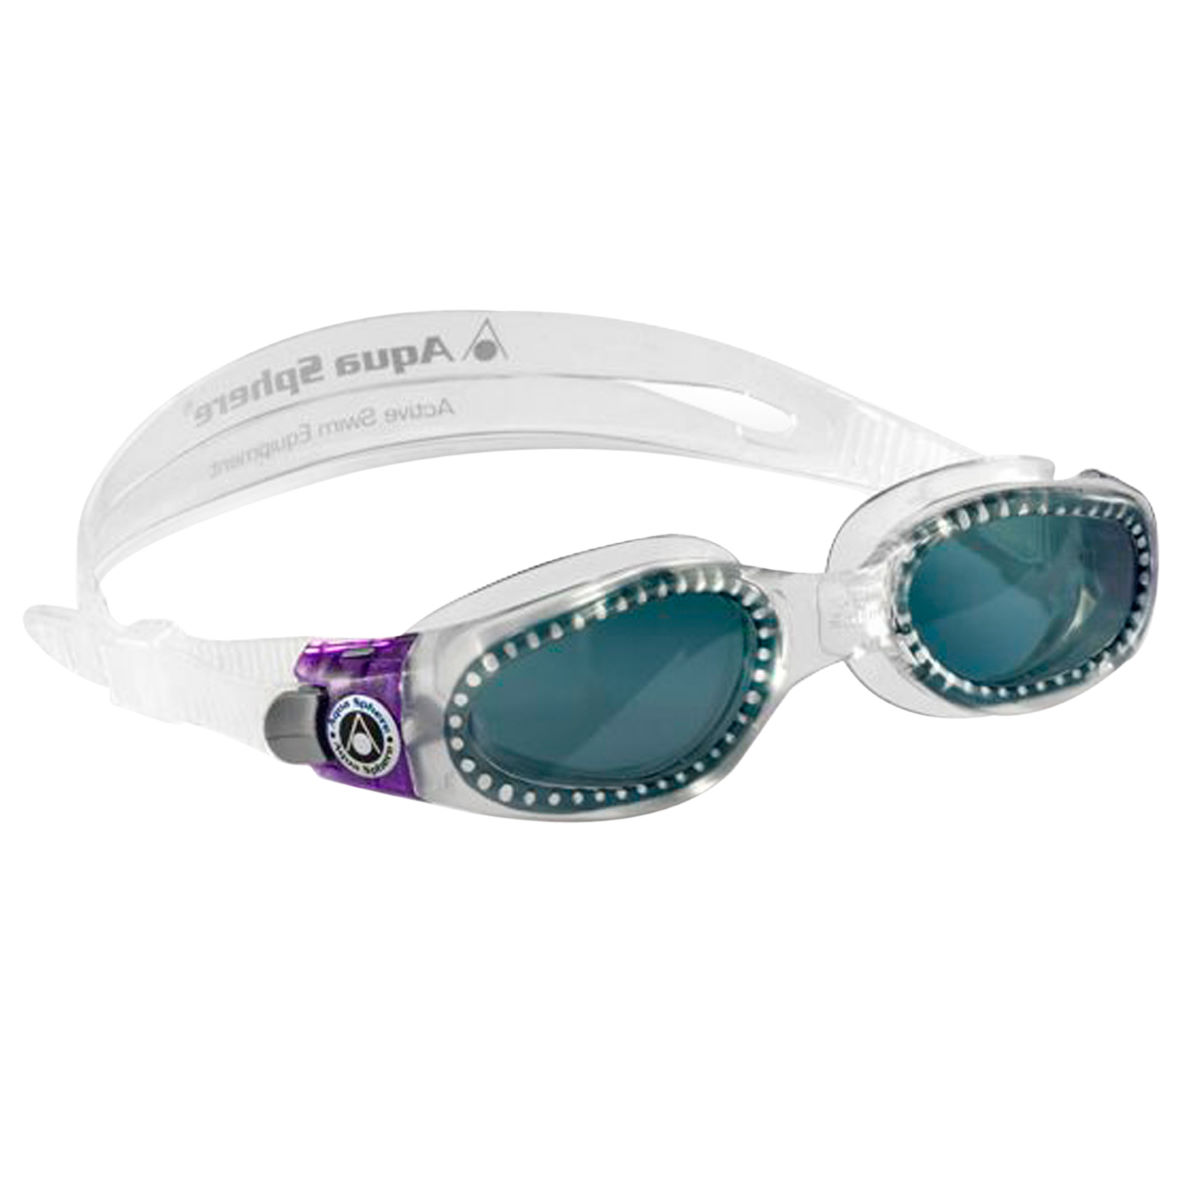 Gafas de natación para mujer con lentes tintadas Aqua Sphere - Kaiman - Gafas